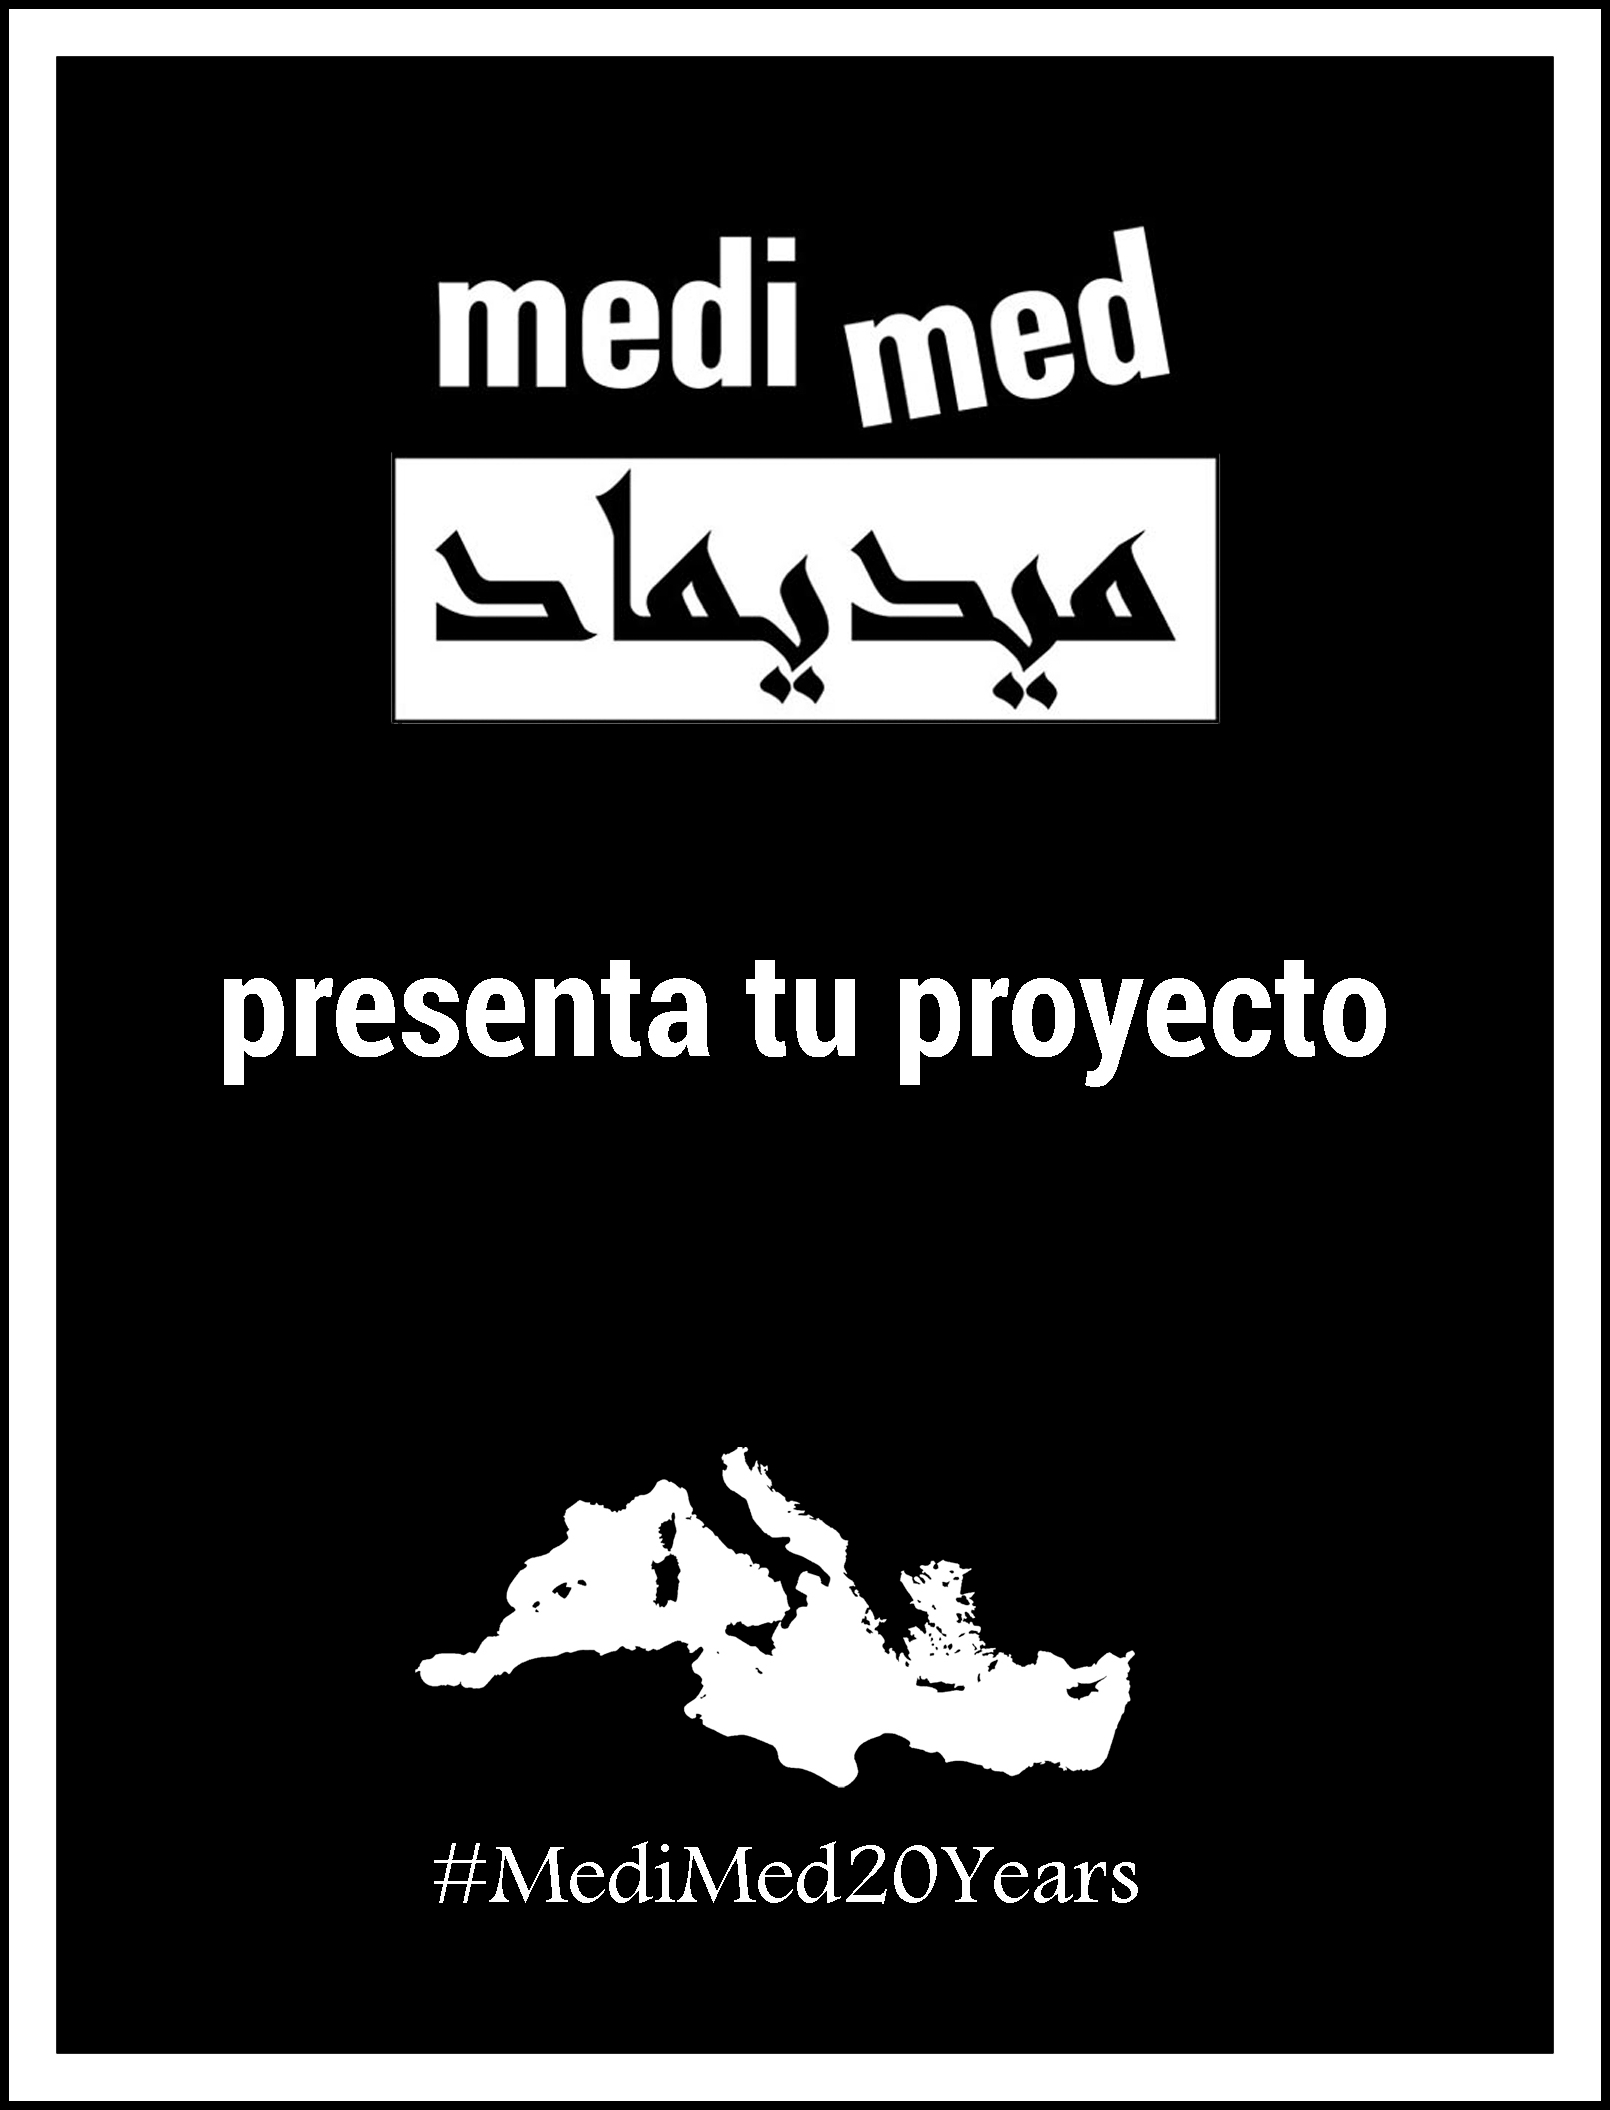 Medi Med Imagen Interior 2019